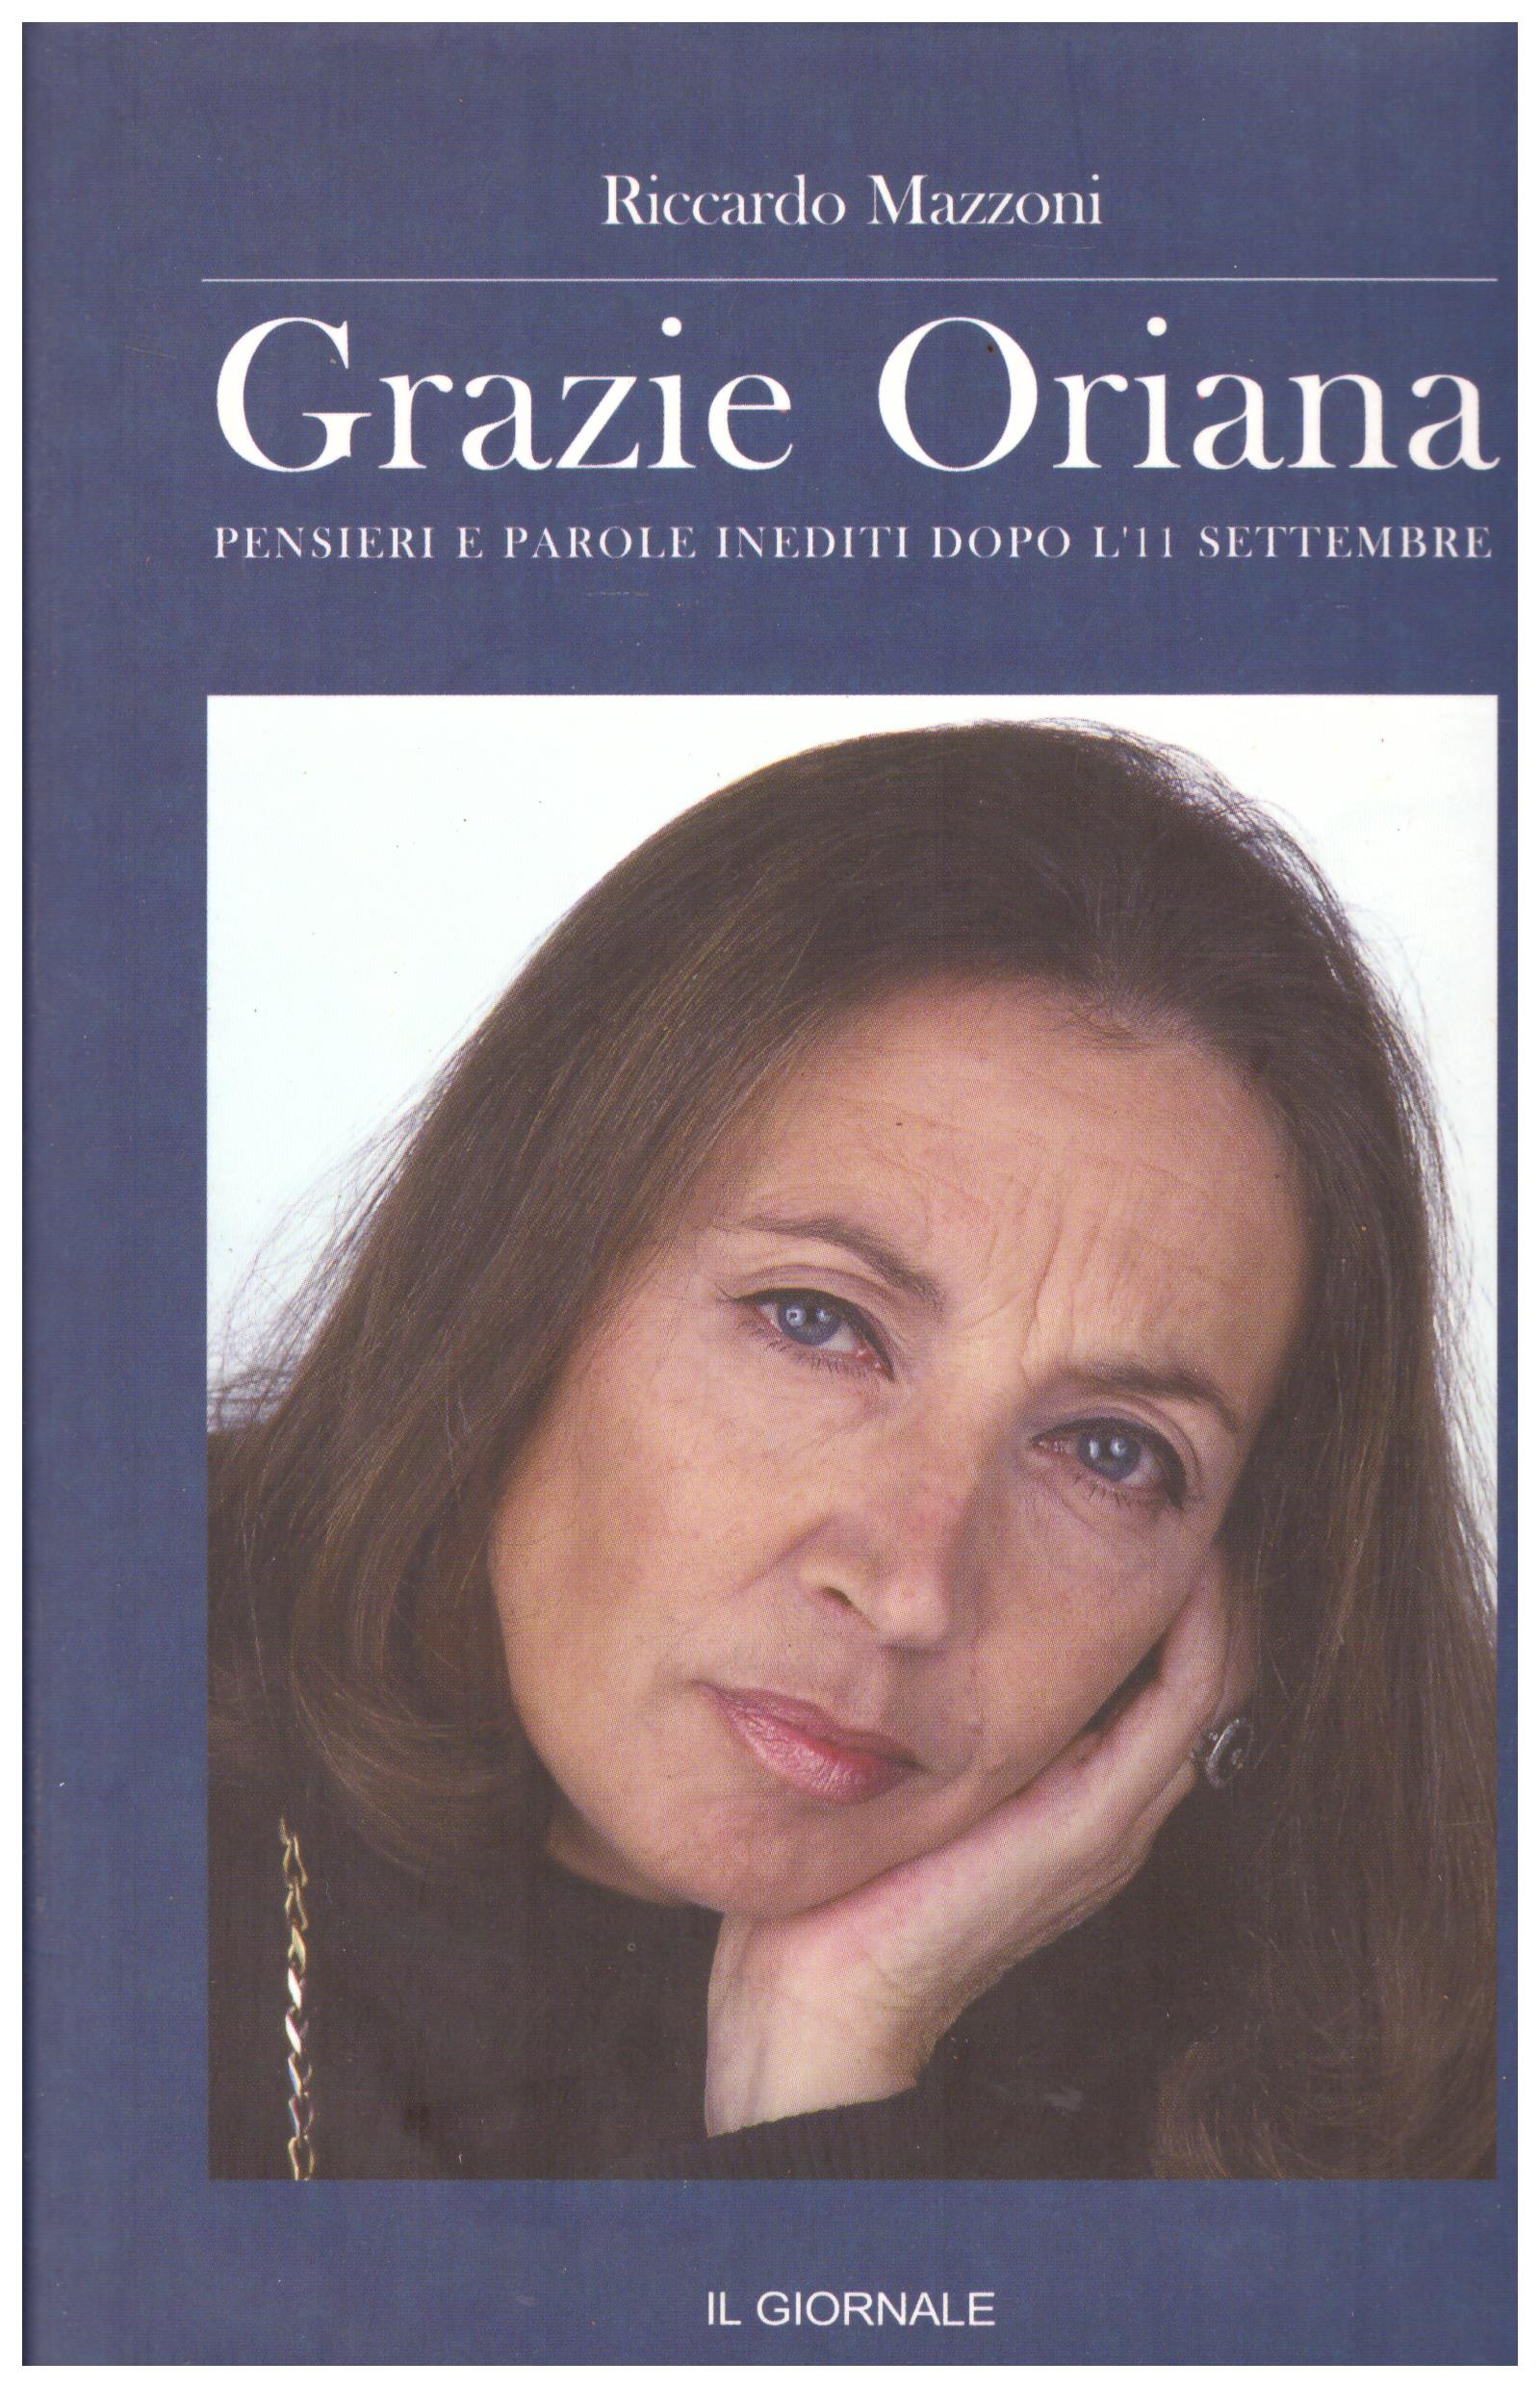 Titolo: Grazia Oriana Autore: Riccardo Mazzoni Editore: Il Giornale